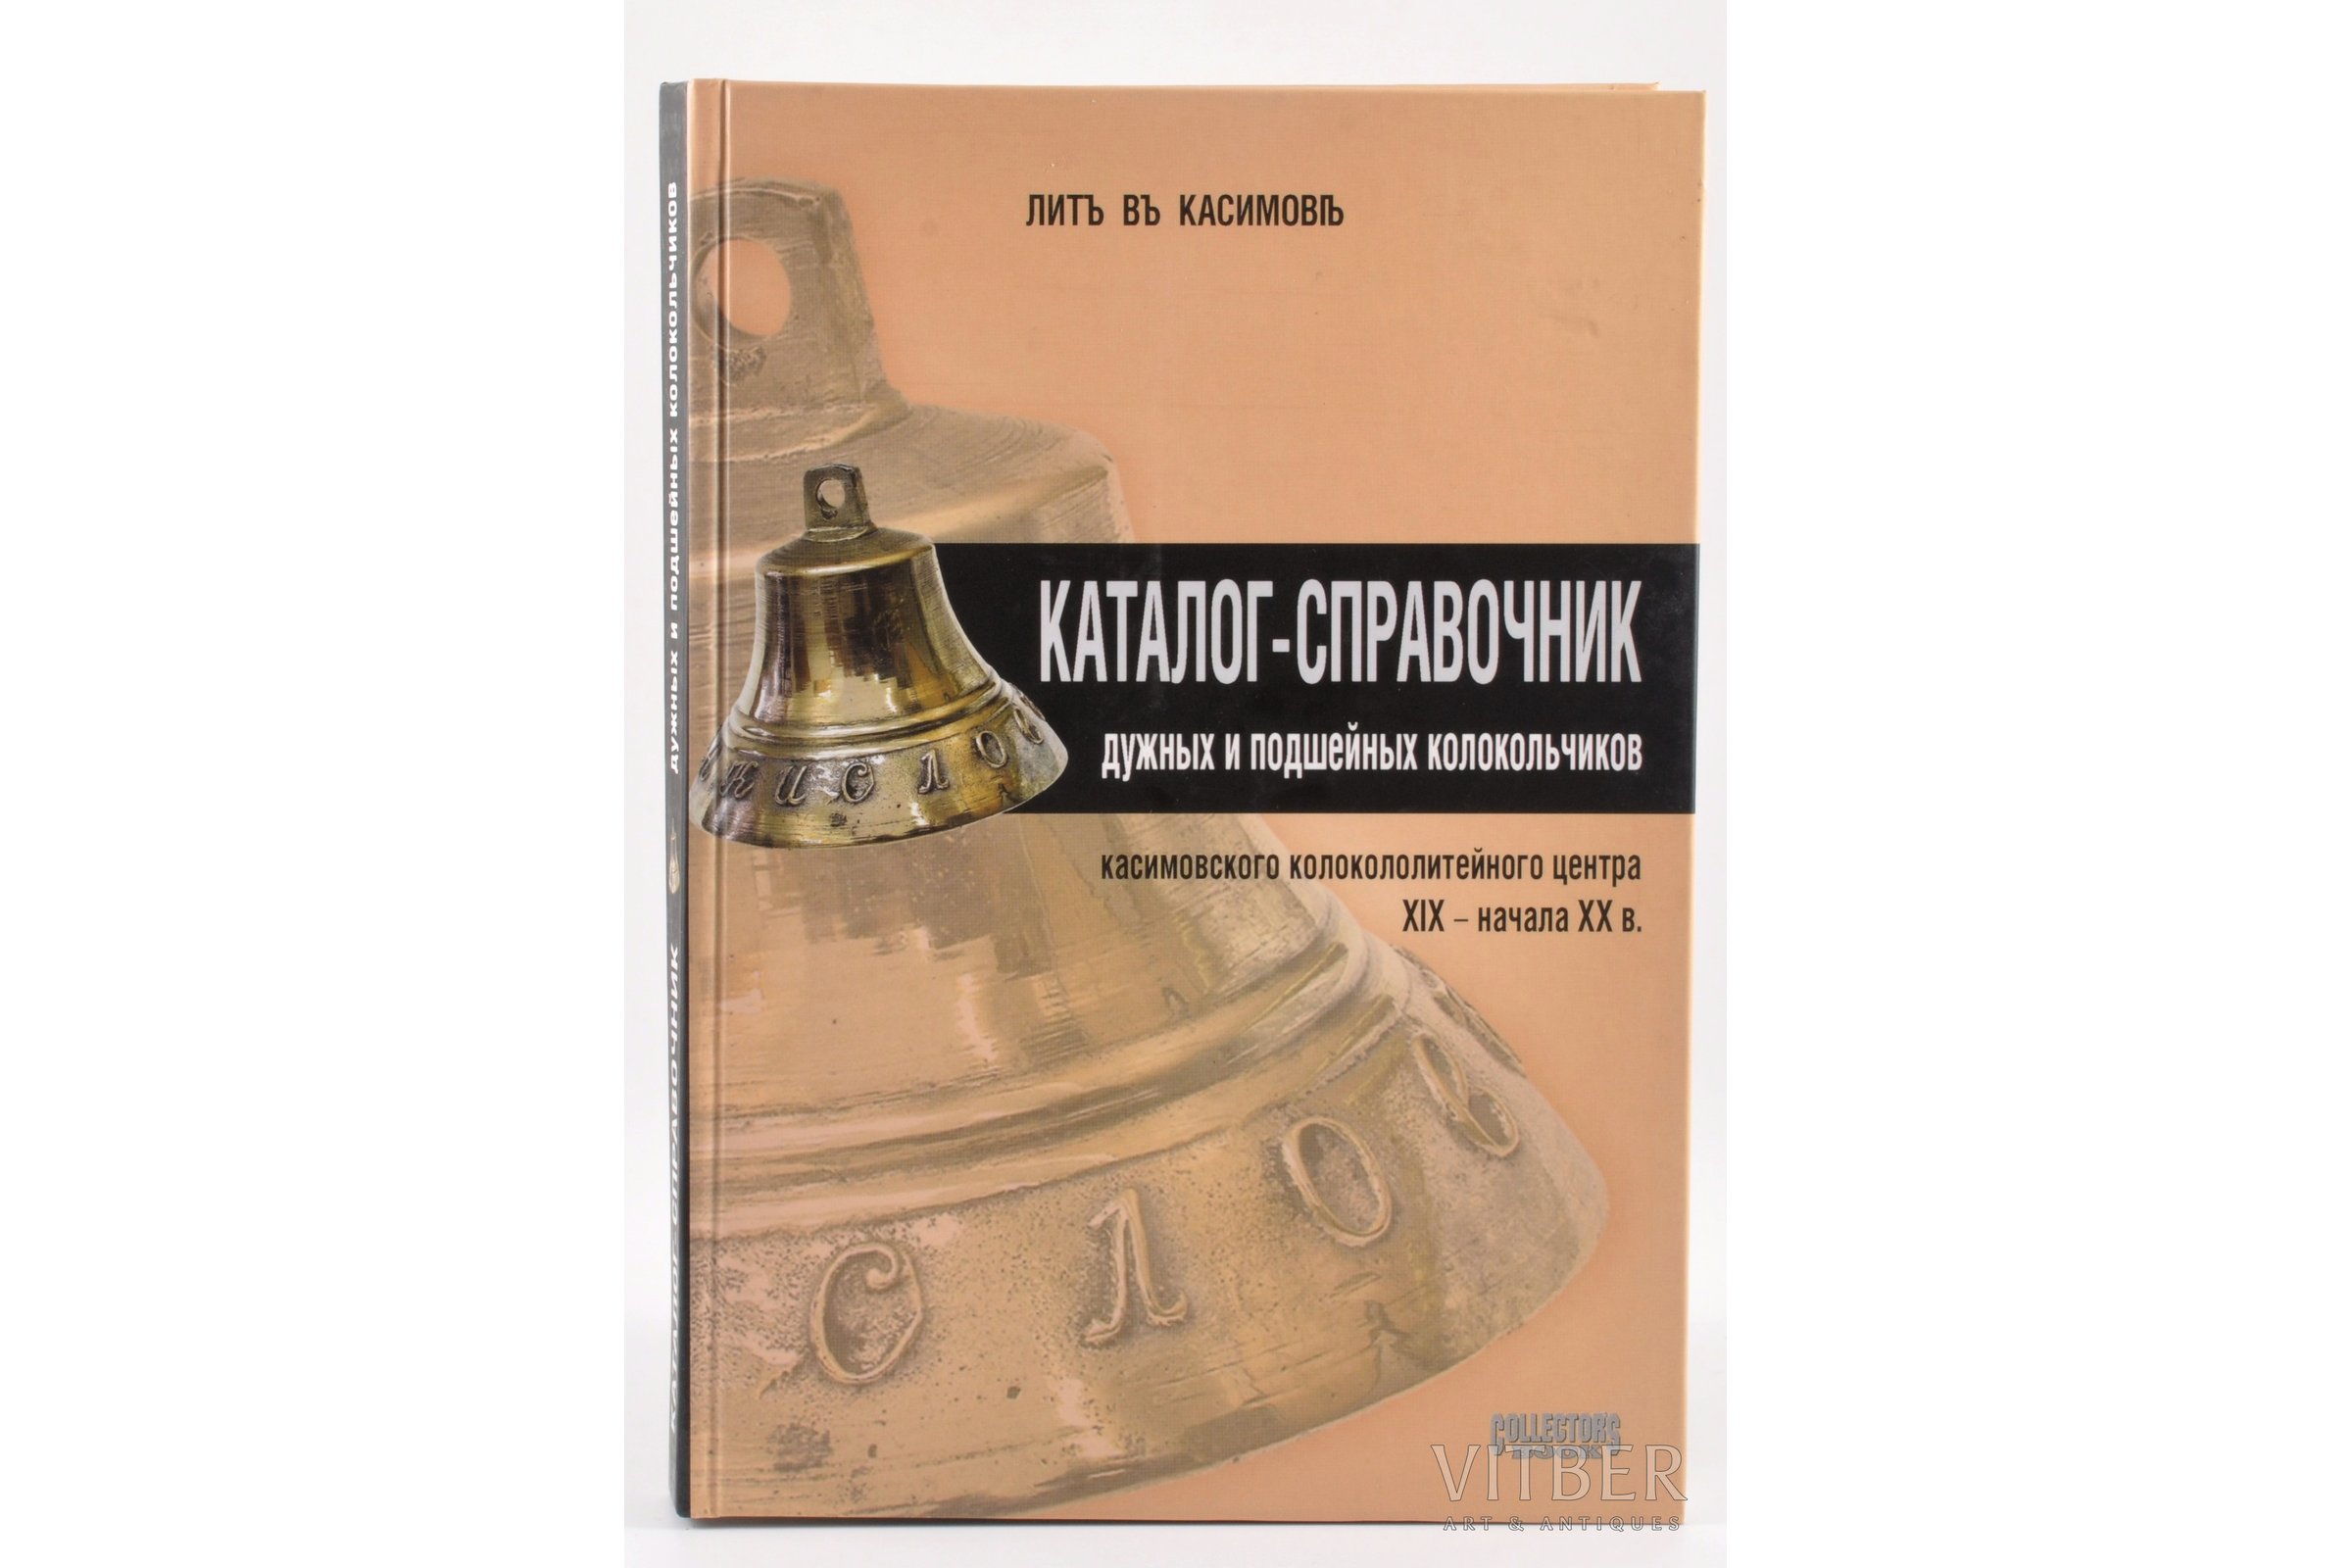 Details about   Catalog Russian Kasimov Bells_Каталог-справочник касимовских колокольчиков 